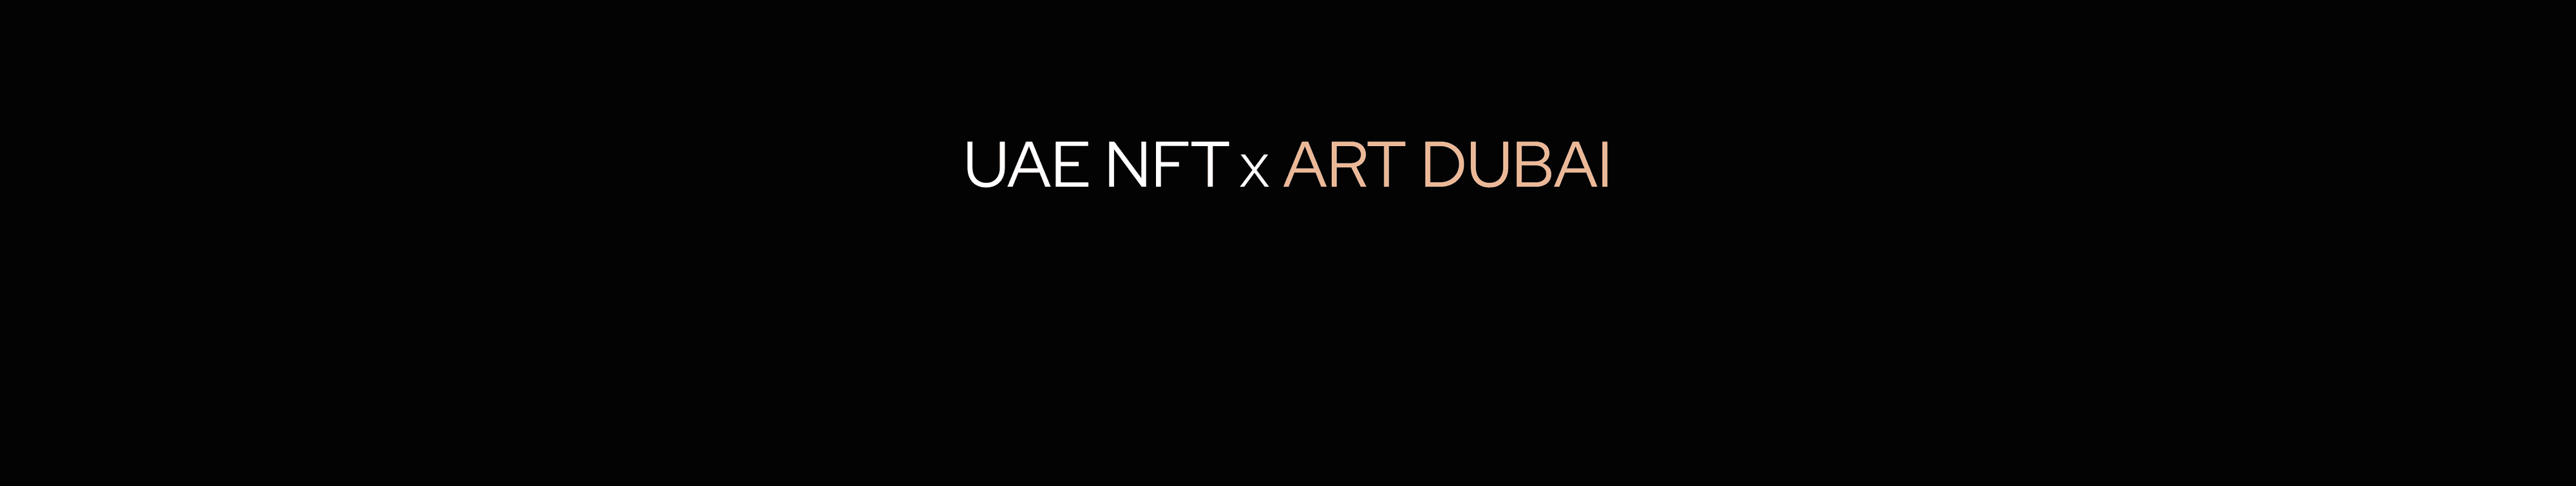 UAE-NFT-ART-DUBAI banner